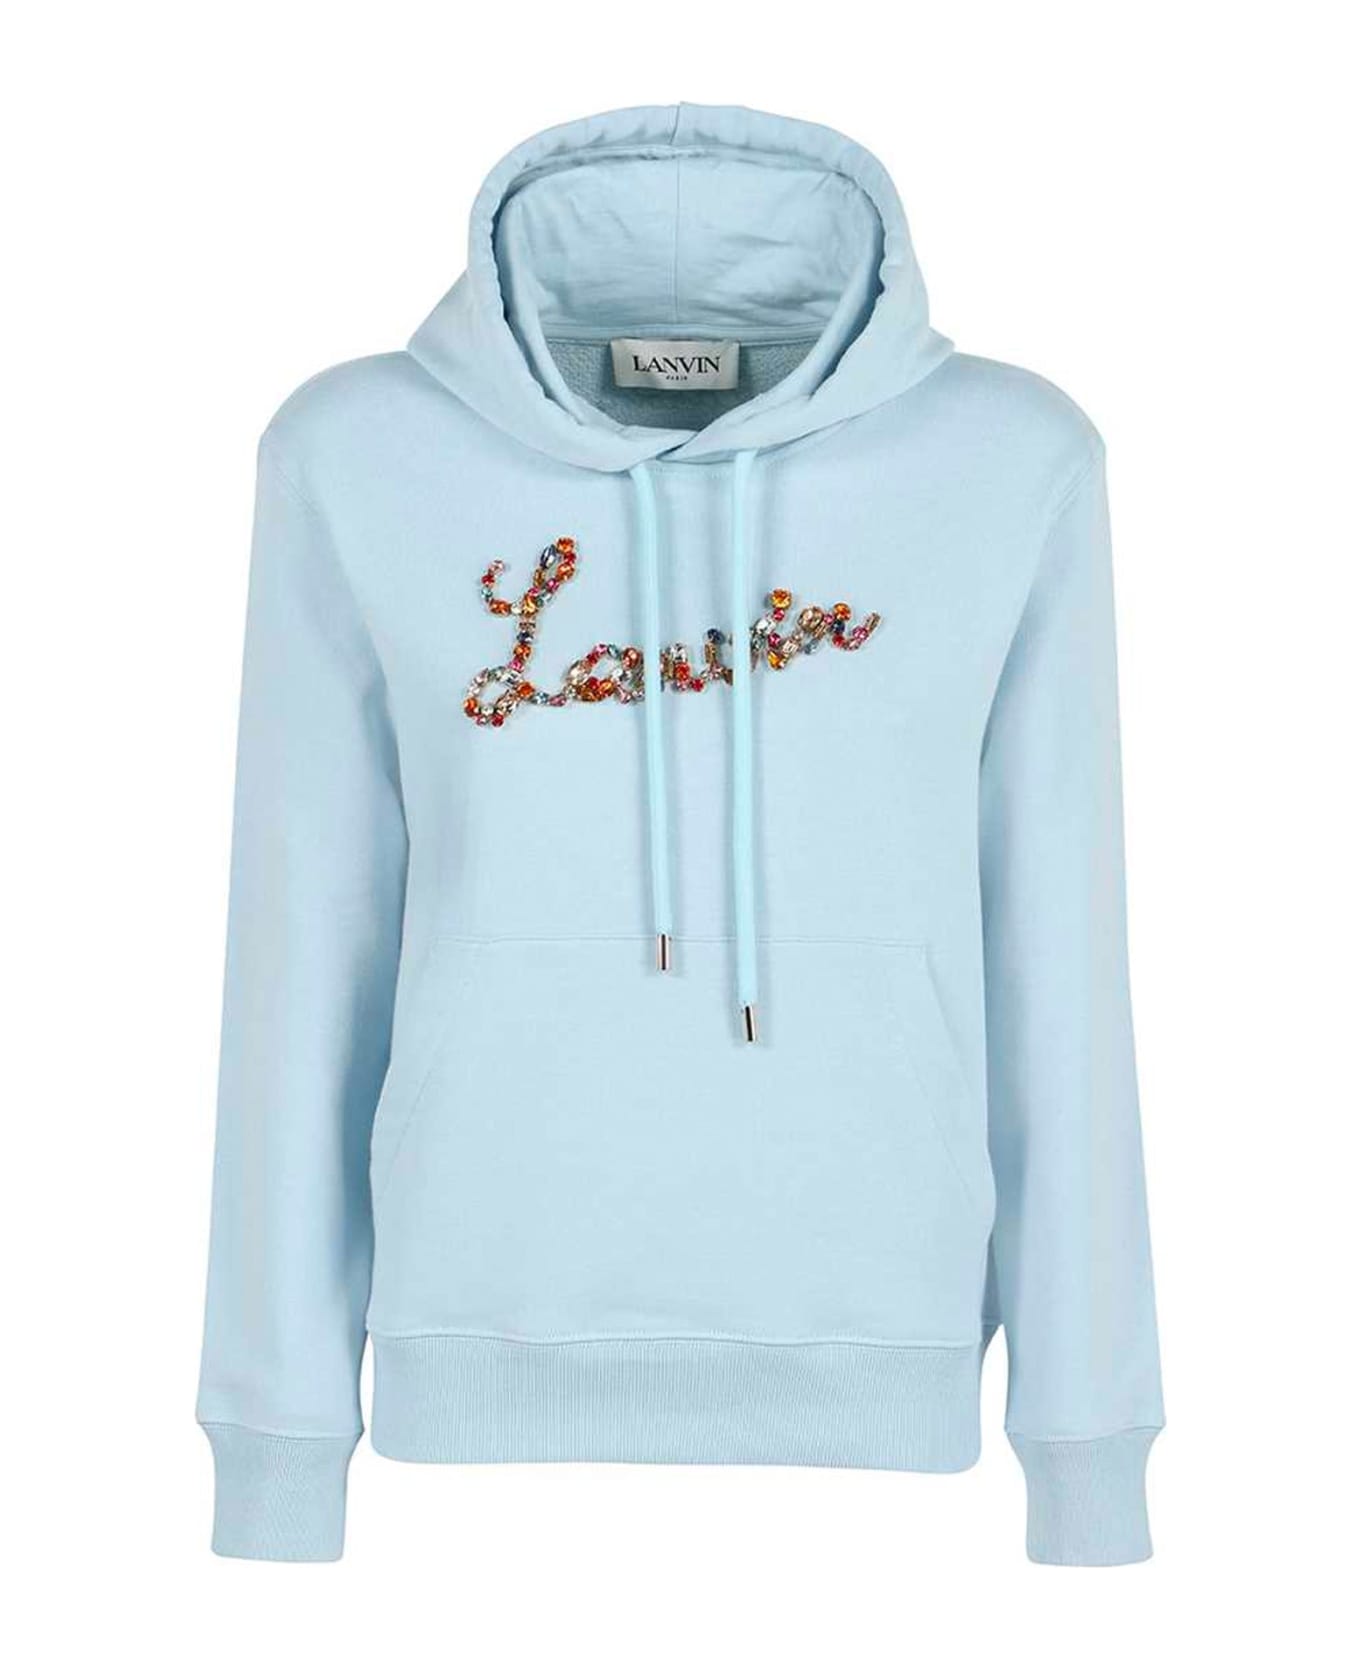 Lanvin Logo Hooded Sweatshirt - Blue